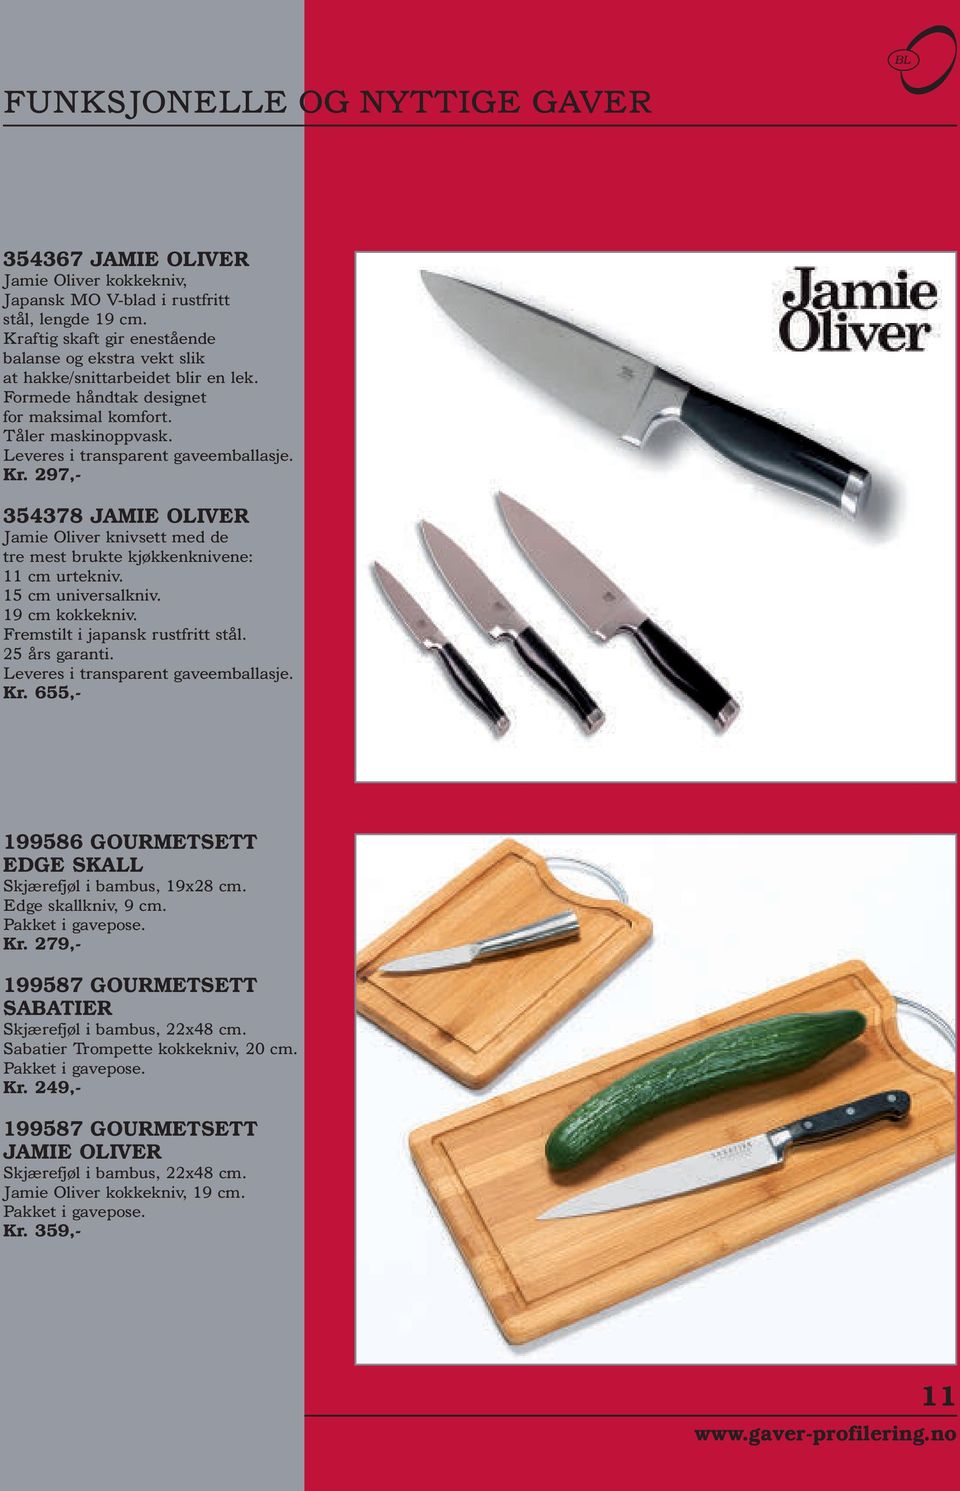 Kr. 297,- 354378 JAMIE OLIVER Jamie Oliver knivsett med de tre mest brukte kjøkkenknivene: 11 cm urtekniv. 15 cm universalkniv. 19 cm kokkekniv. Fremstilt i japansk rustfritt stål. 25 års garanti.